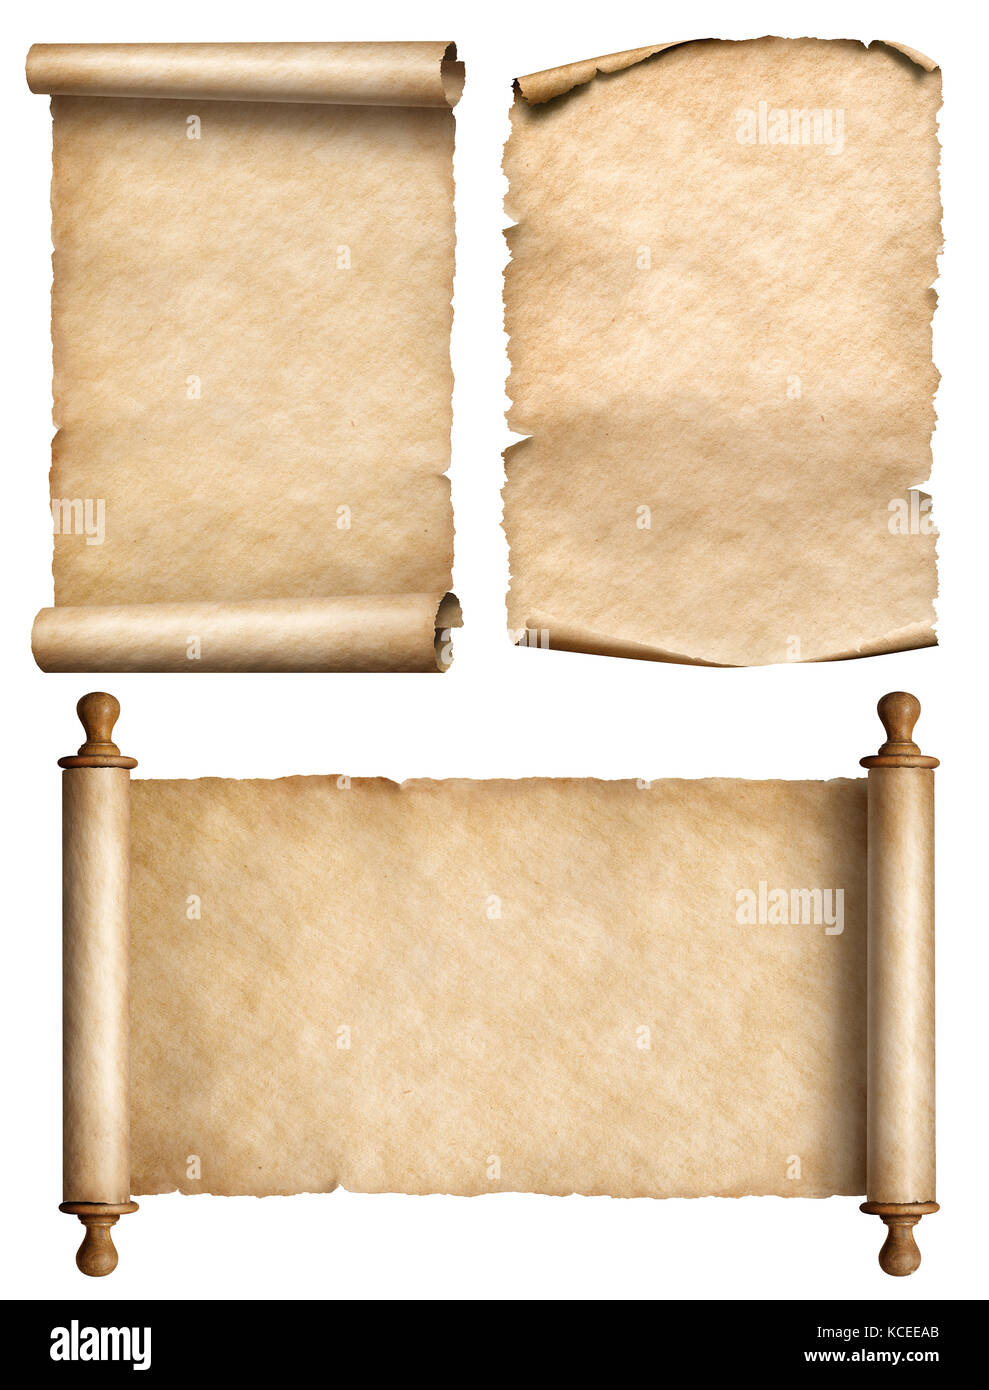 Alte blättern, Pergament, Papyrus Vintage 3 Abbildung d Stockfoto